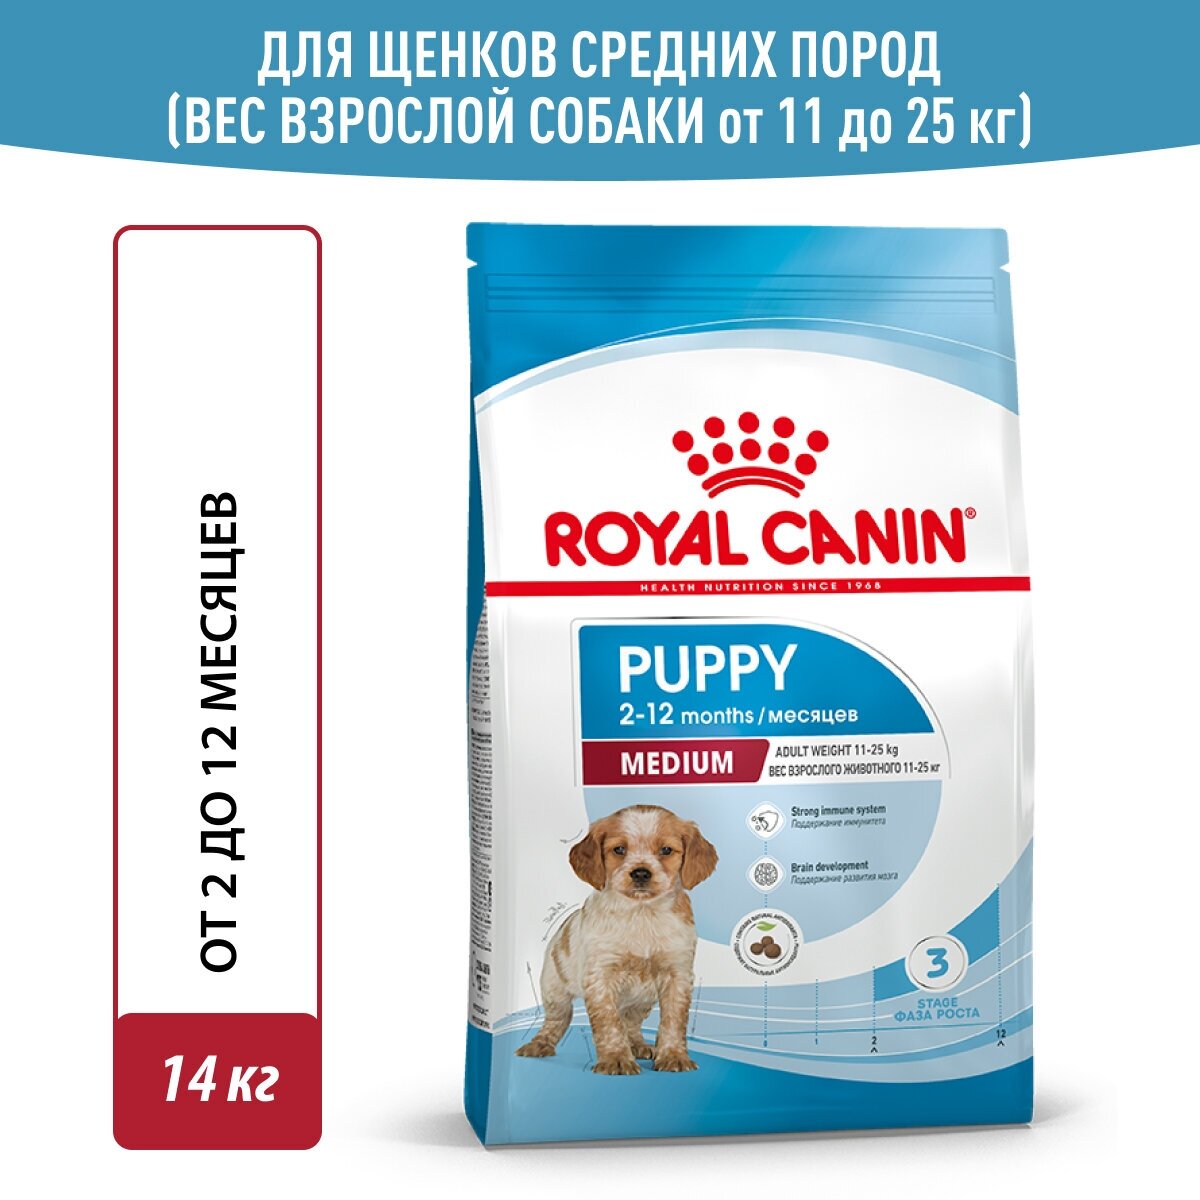 Сухой корм Royal Canin Medium Puppy (Медиум Паппи) для щенков (для средних пород) до 12 месяцев, 14 кг